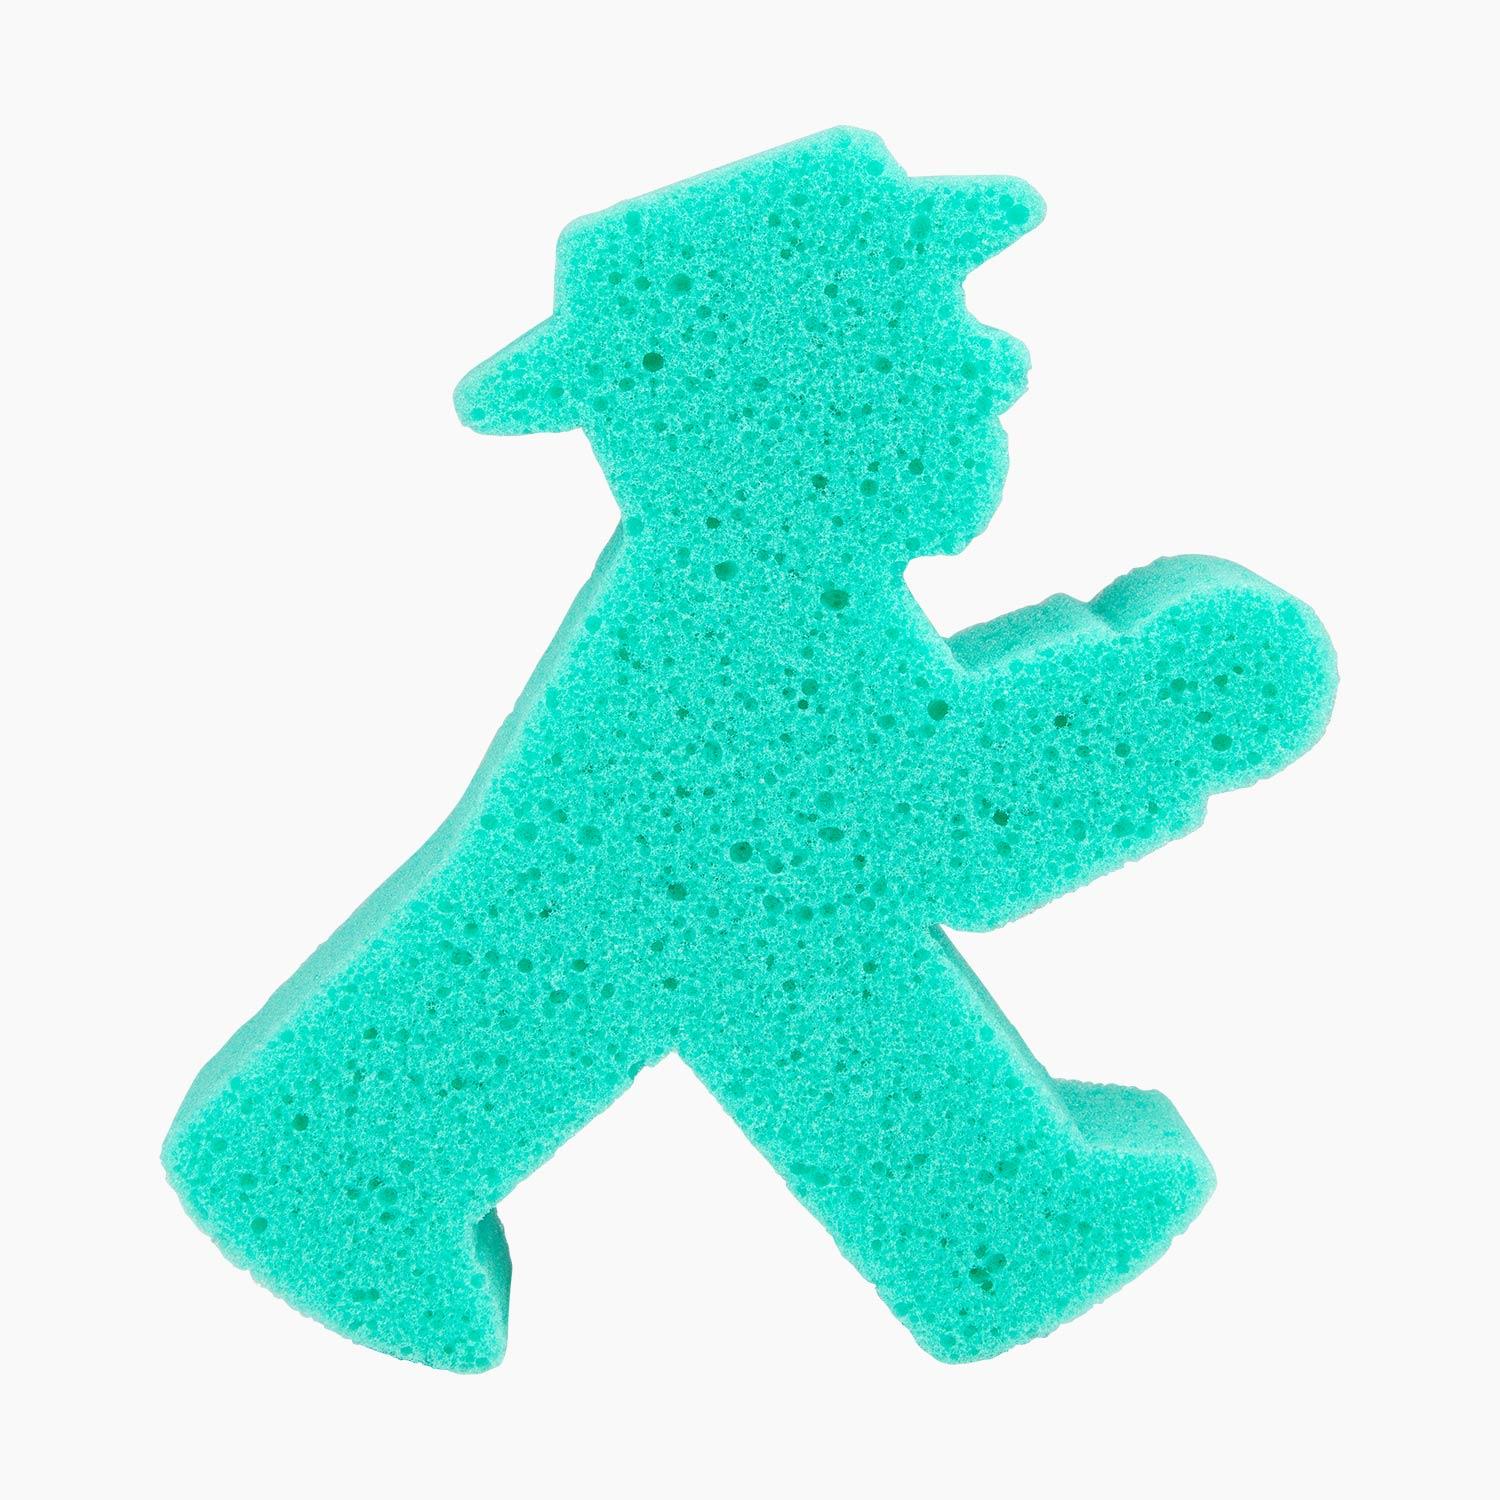 SCHAUMSCHLÄGER green/ Bath Sponge